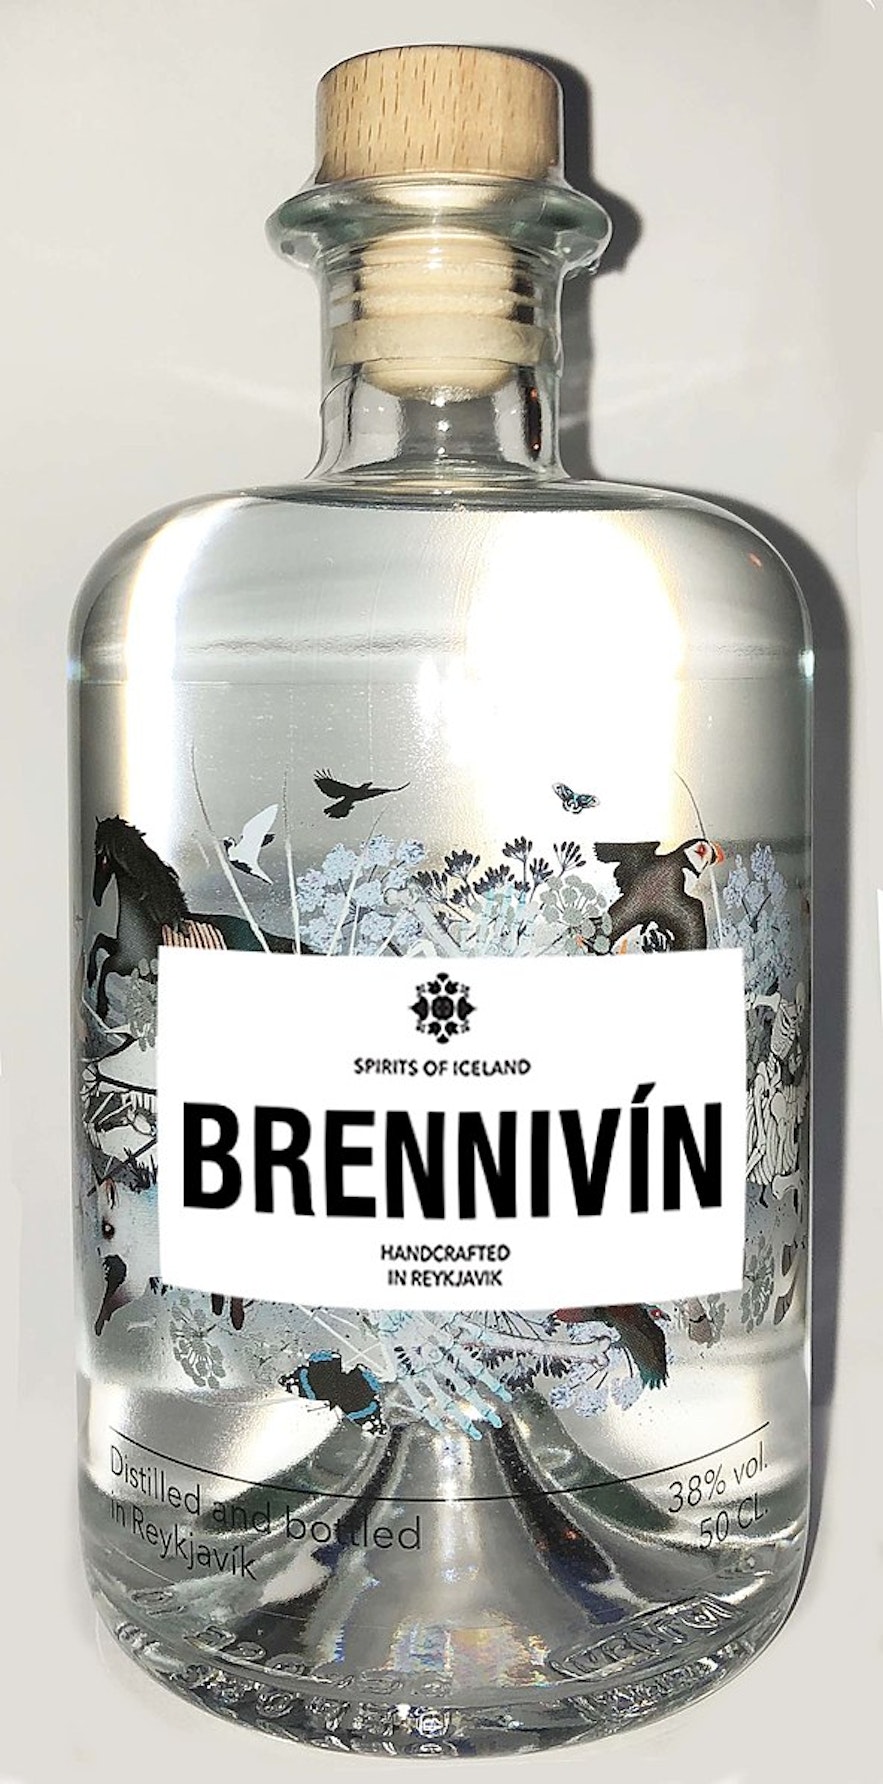 흑사병으로도 알려진 브레니빈은 아이슬란드 사람들이 가장 좋아하는 술입니다.